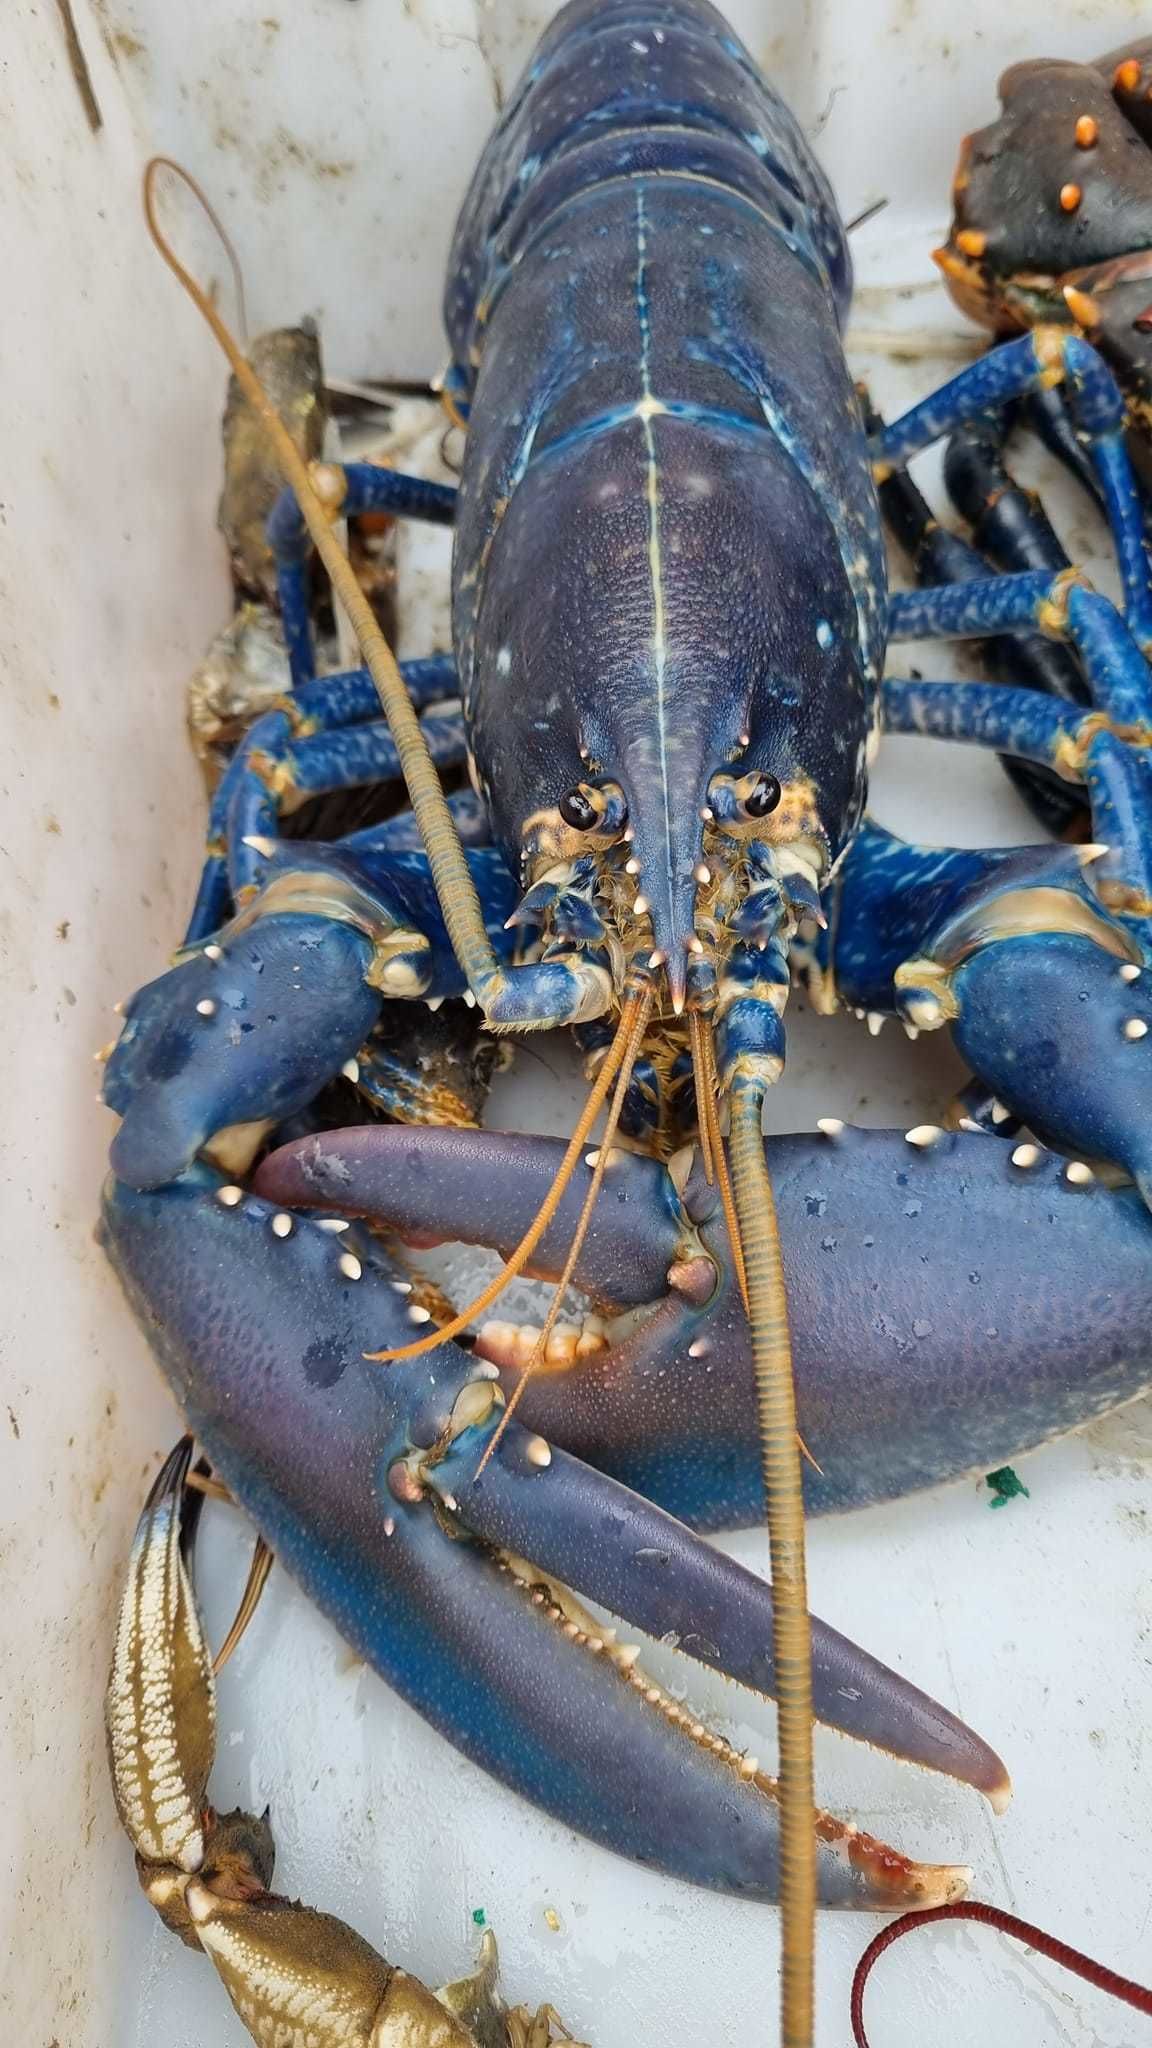 Ricky Greenhowe landed a rare blue lobster